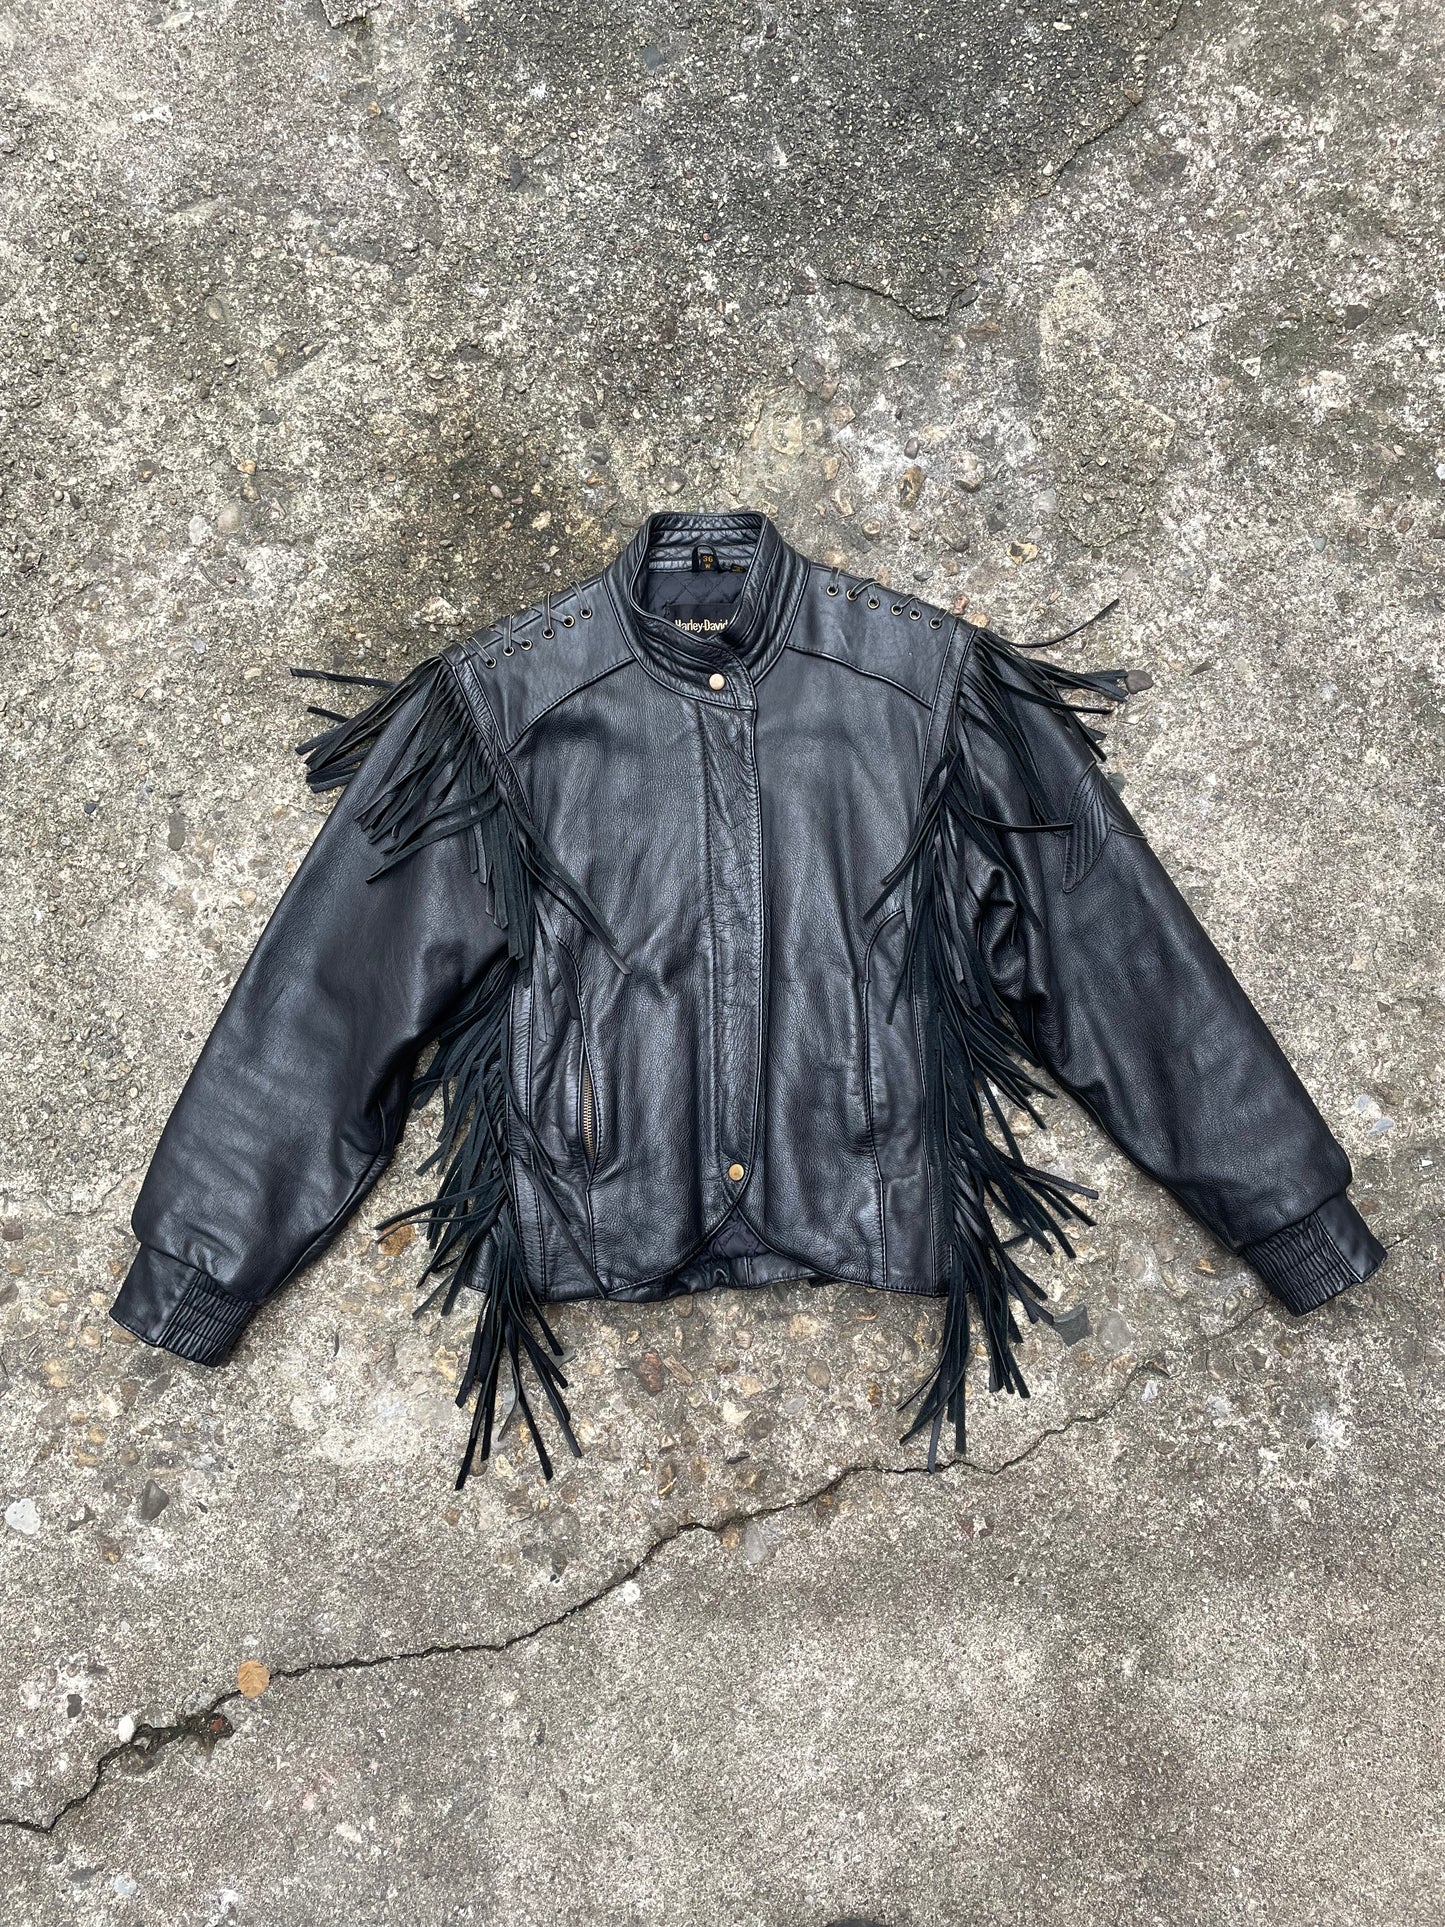 1980’s Harley Davidson Fringe Leather Motorcycle Jacket - S